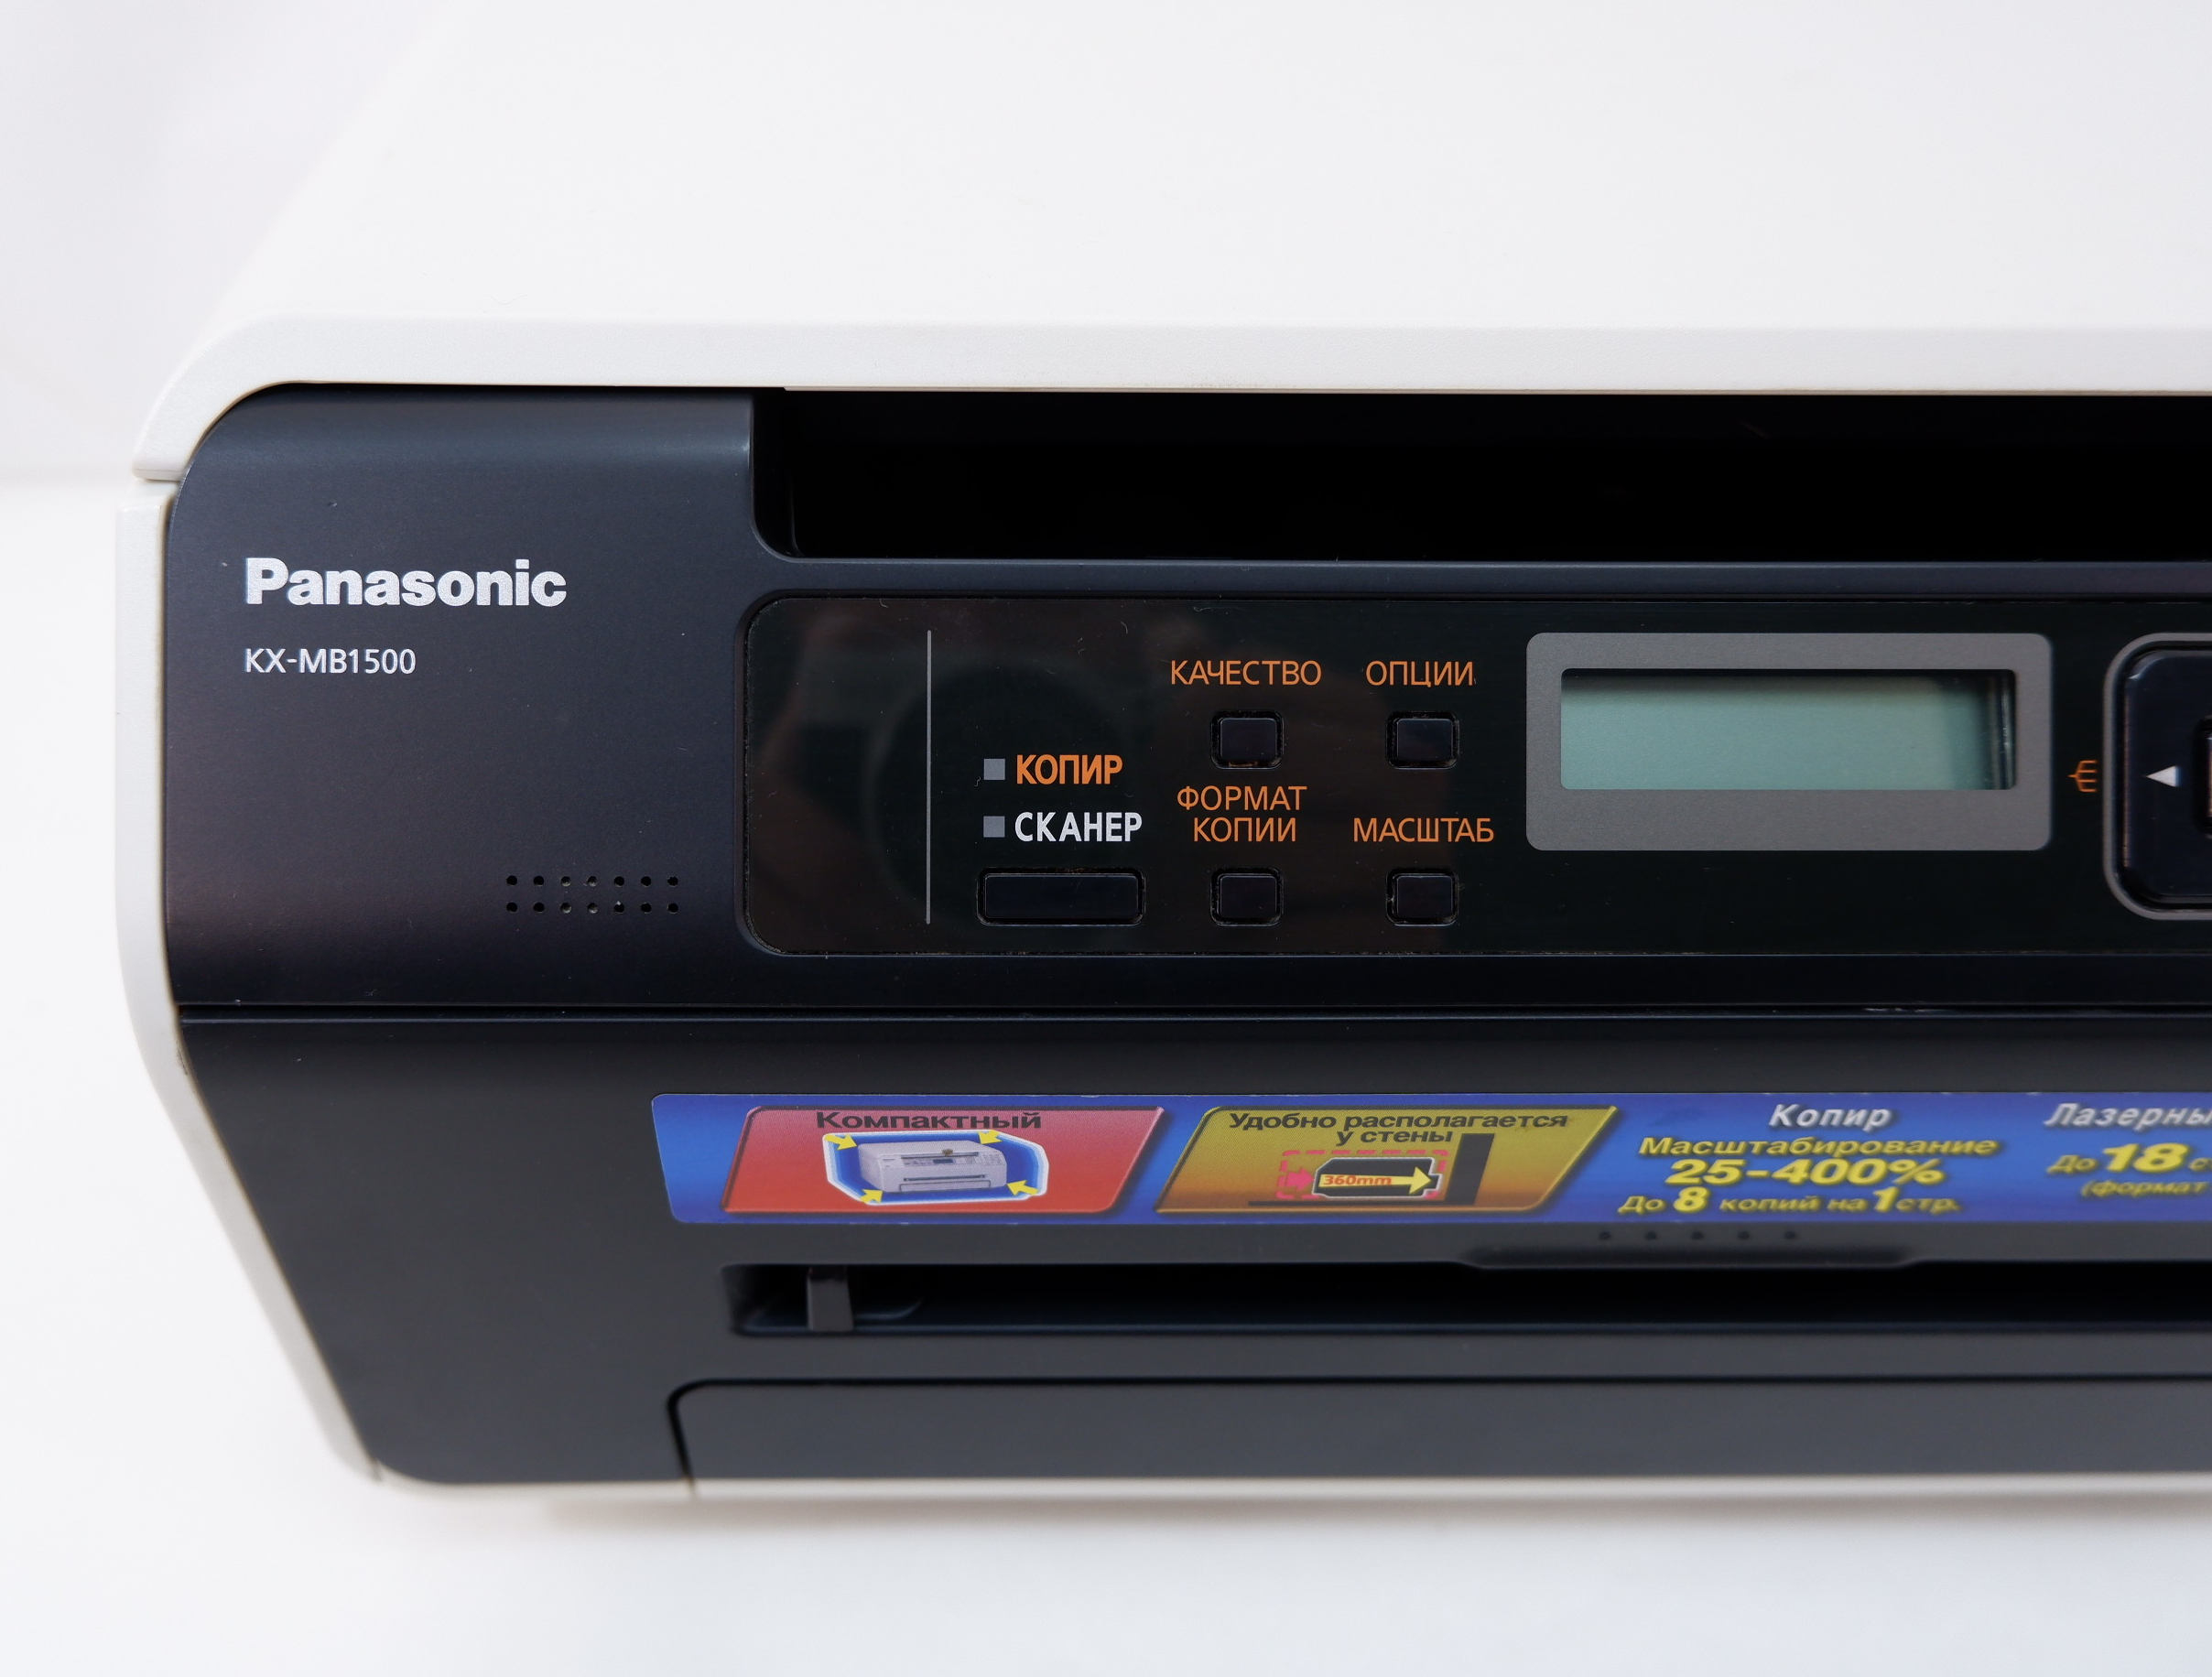 Panasonic kx mb1500 драйвер бесплатный. МФУ Панасоник КХ-мв1500. Panasonic KX-mb1500. Принтер Panasonic KX-mb1500. Лазерный принтер Panasonic KX-mb1500.